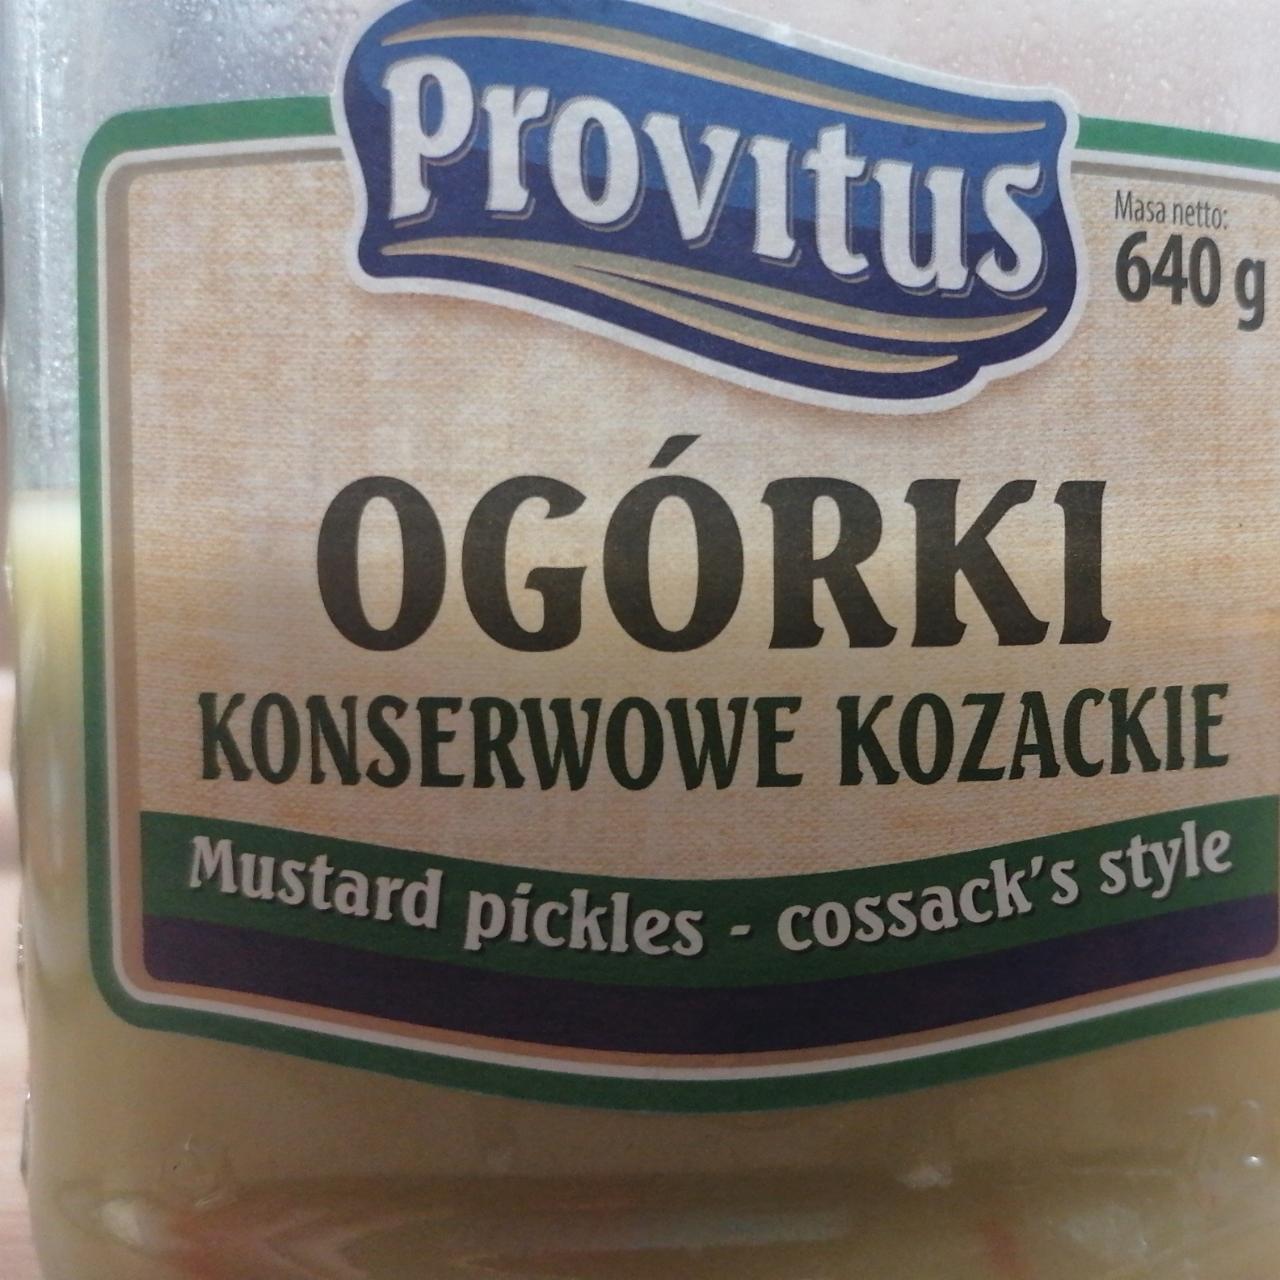 Fotografie - Ogórki konserwowe kozackie Provitus